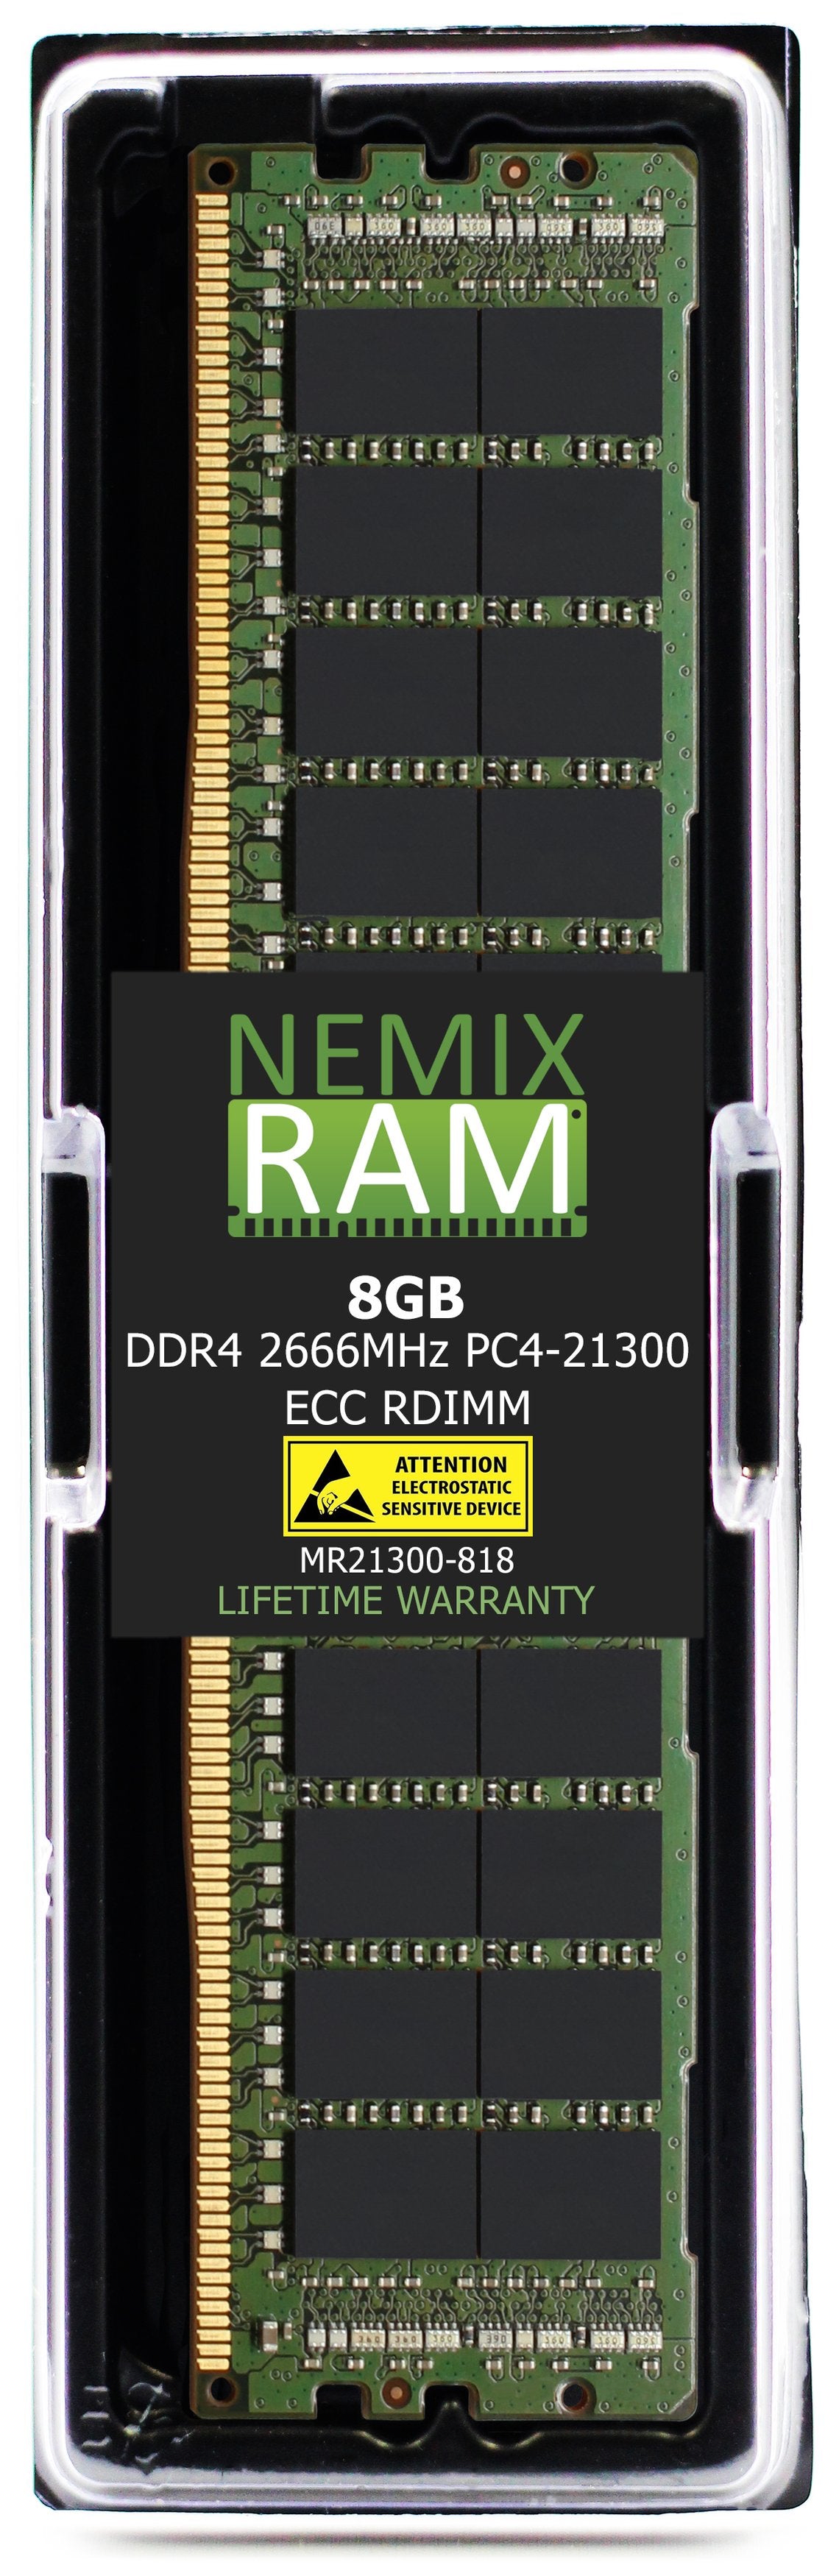 Hynix HMA81GR7CJR8N-VK 8GB DDR4 2666MHZ PC4-21300 RDIMM Compatible Memory Module